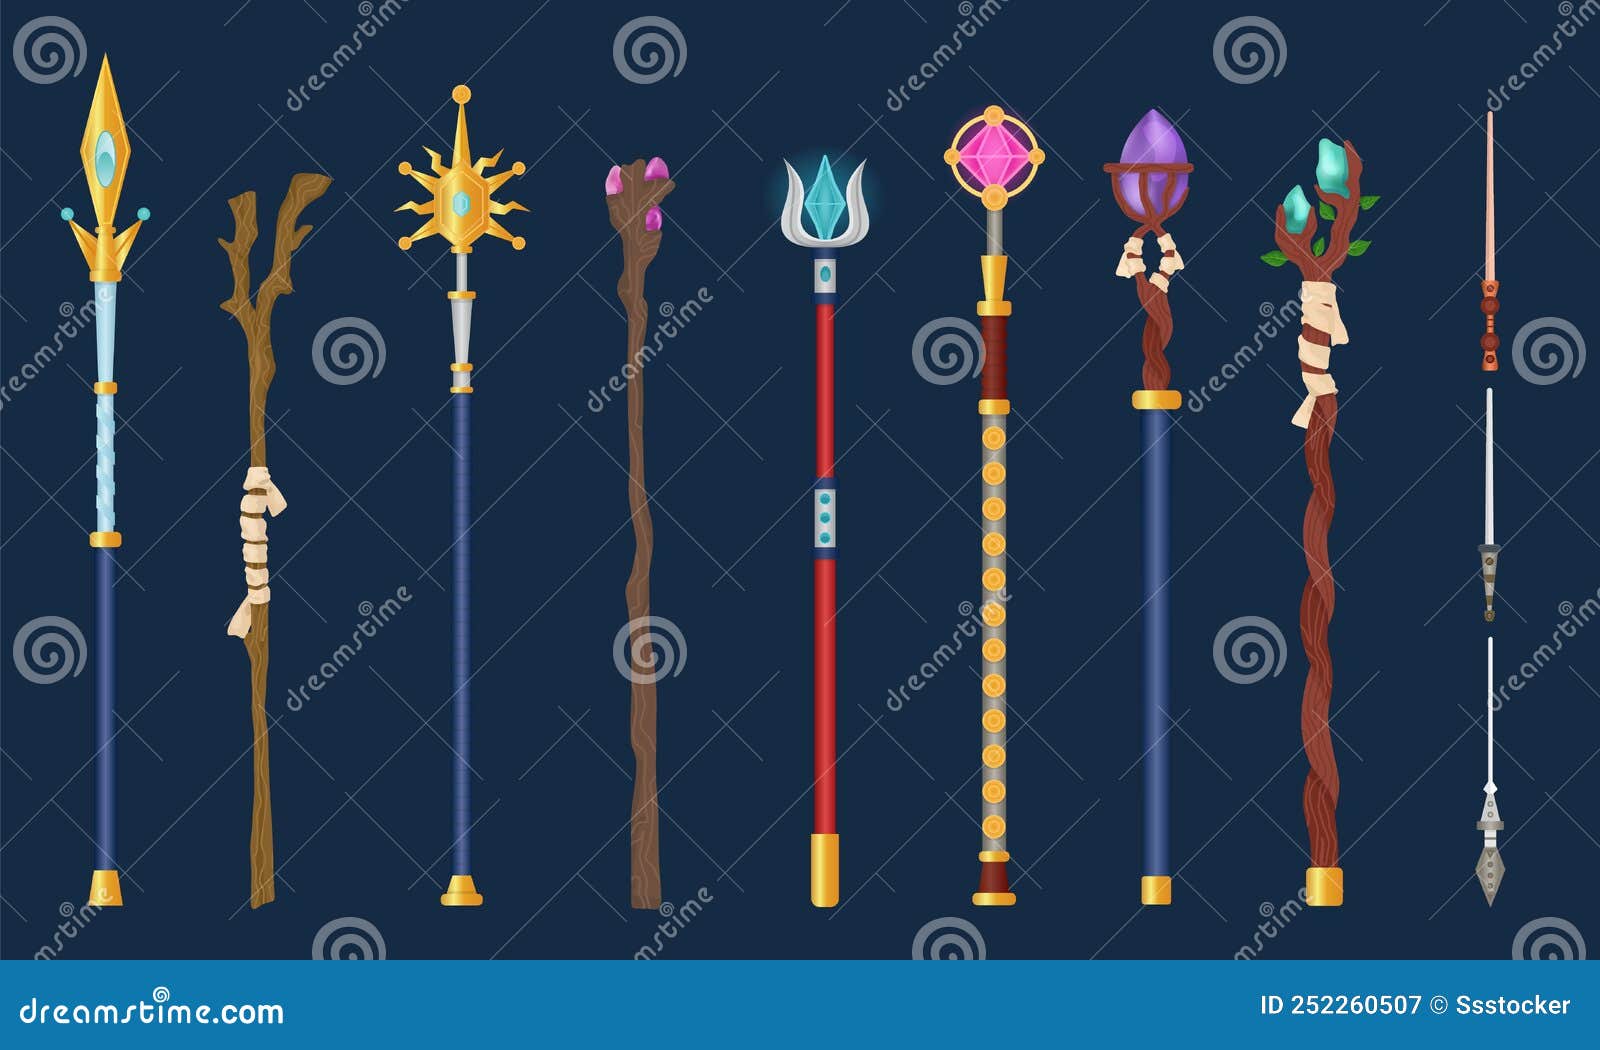 Cartoon Magical Staff. Wizards Magic Weapon, Magical Wand Princess